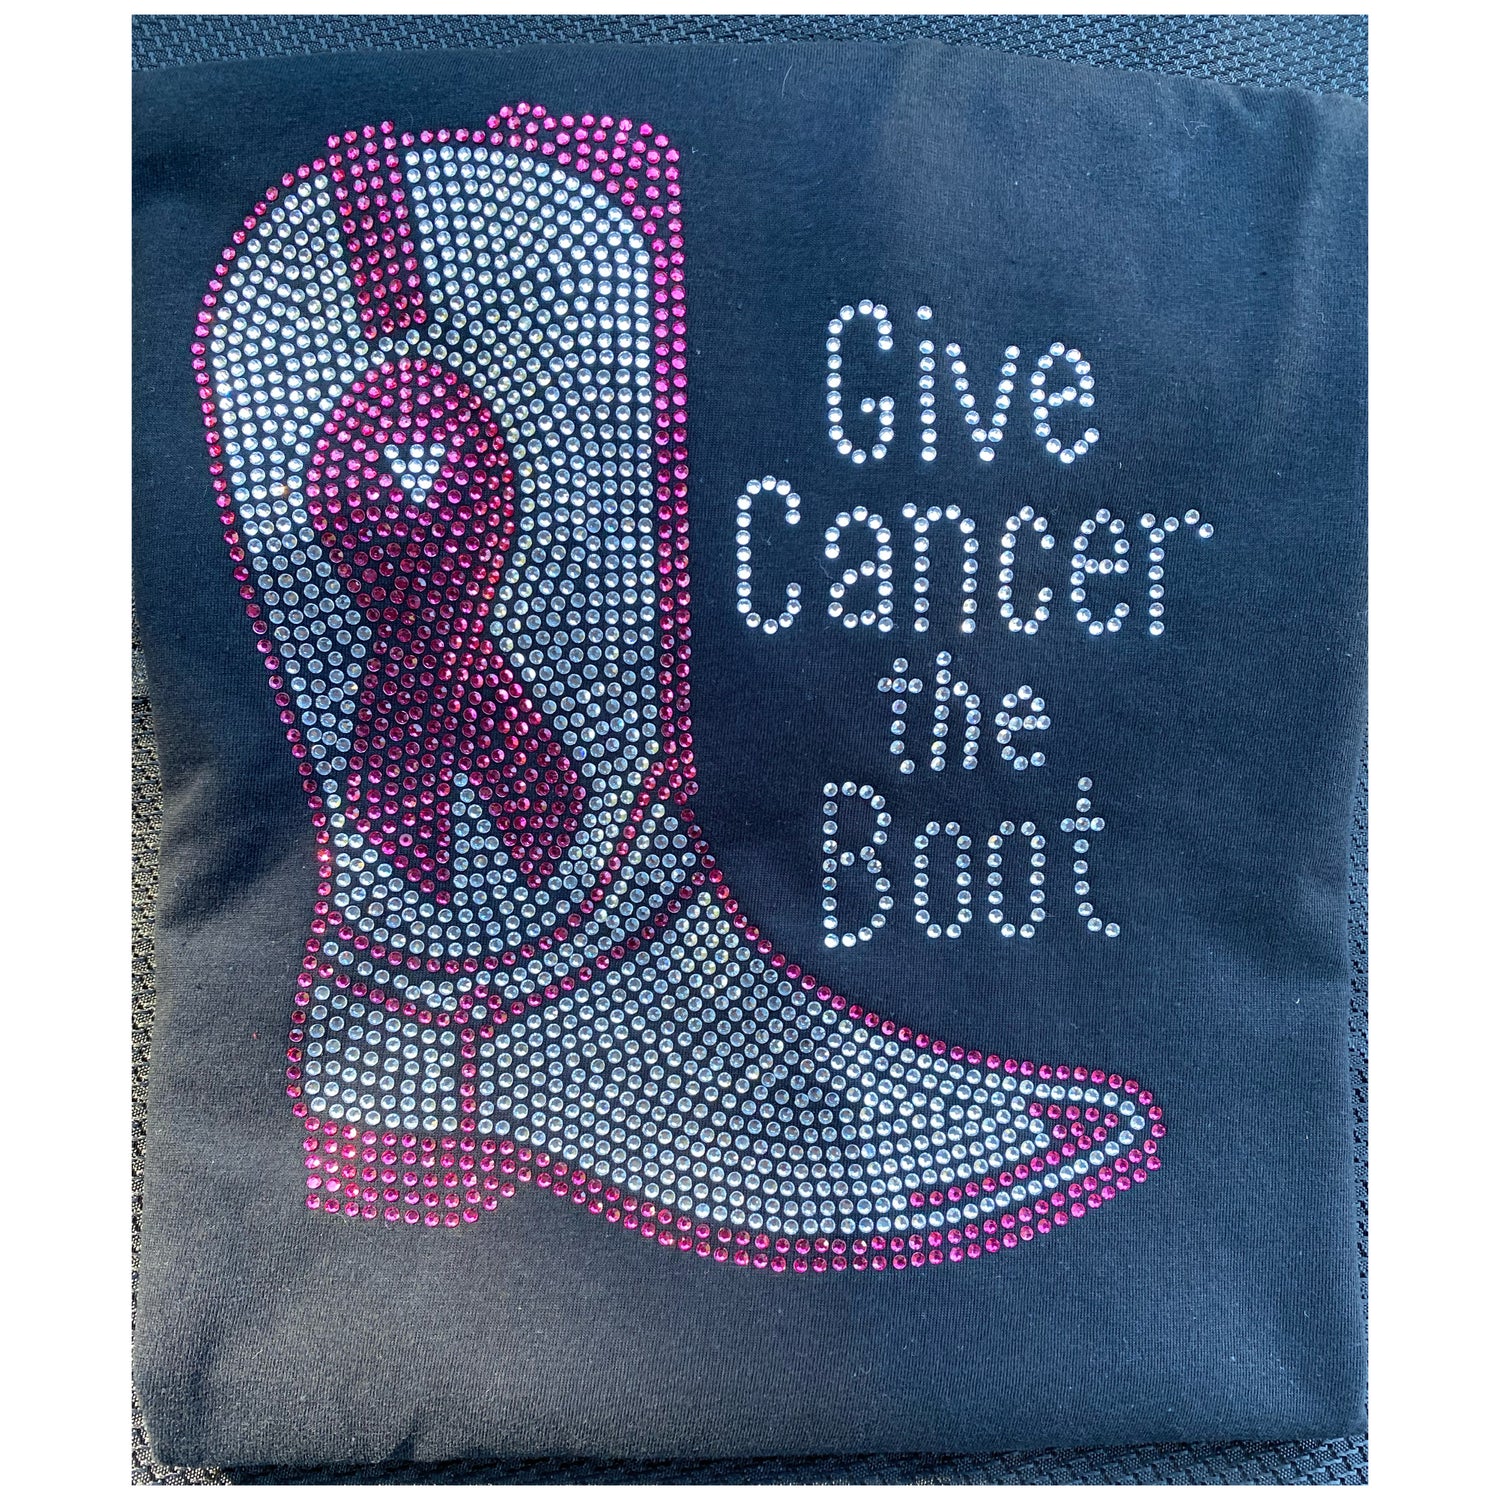 cancer awareness shirts